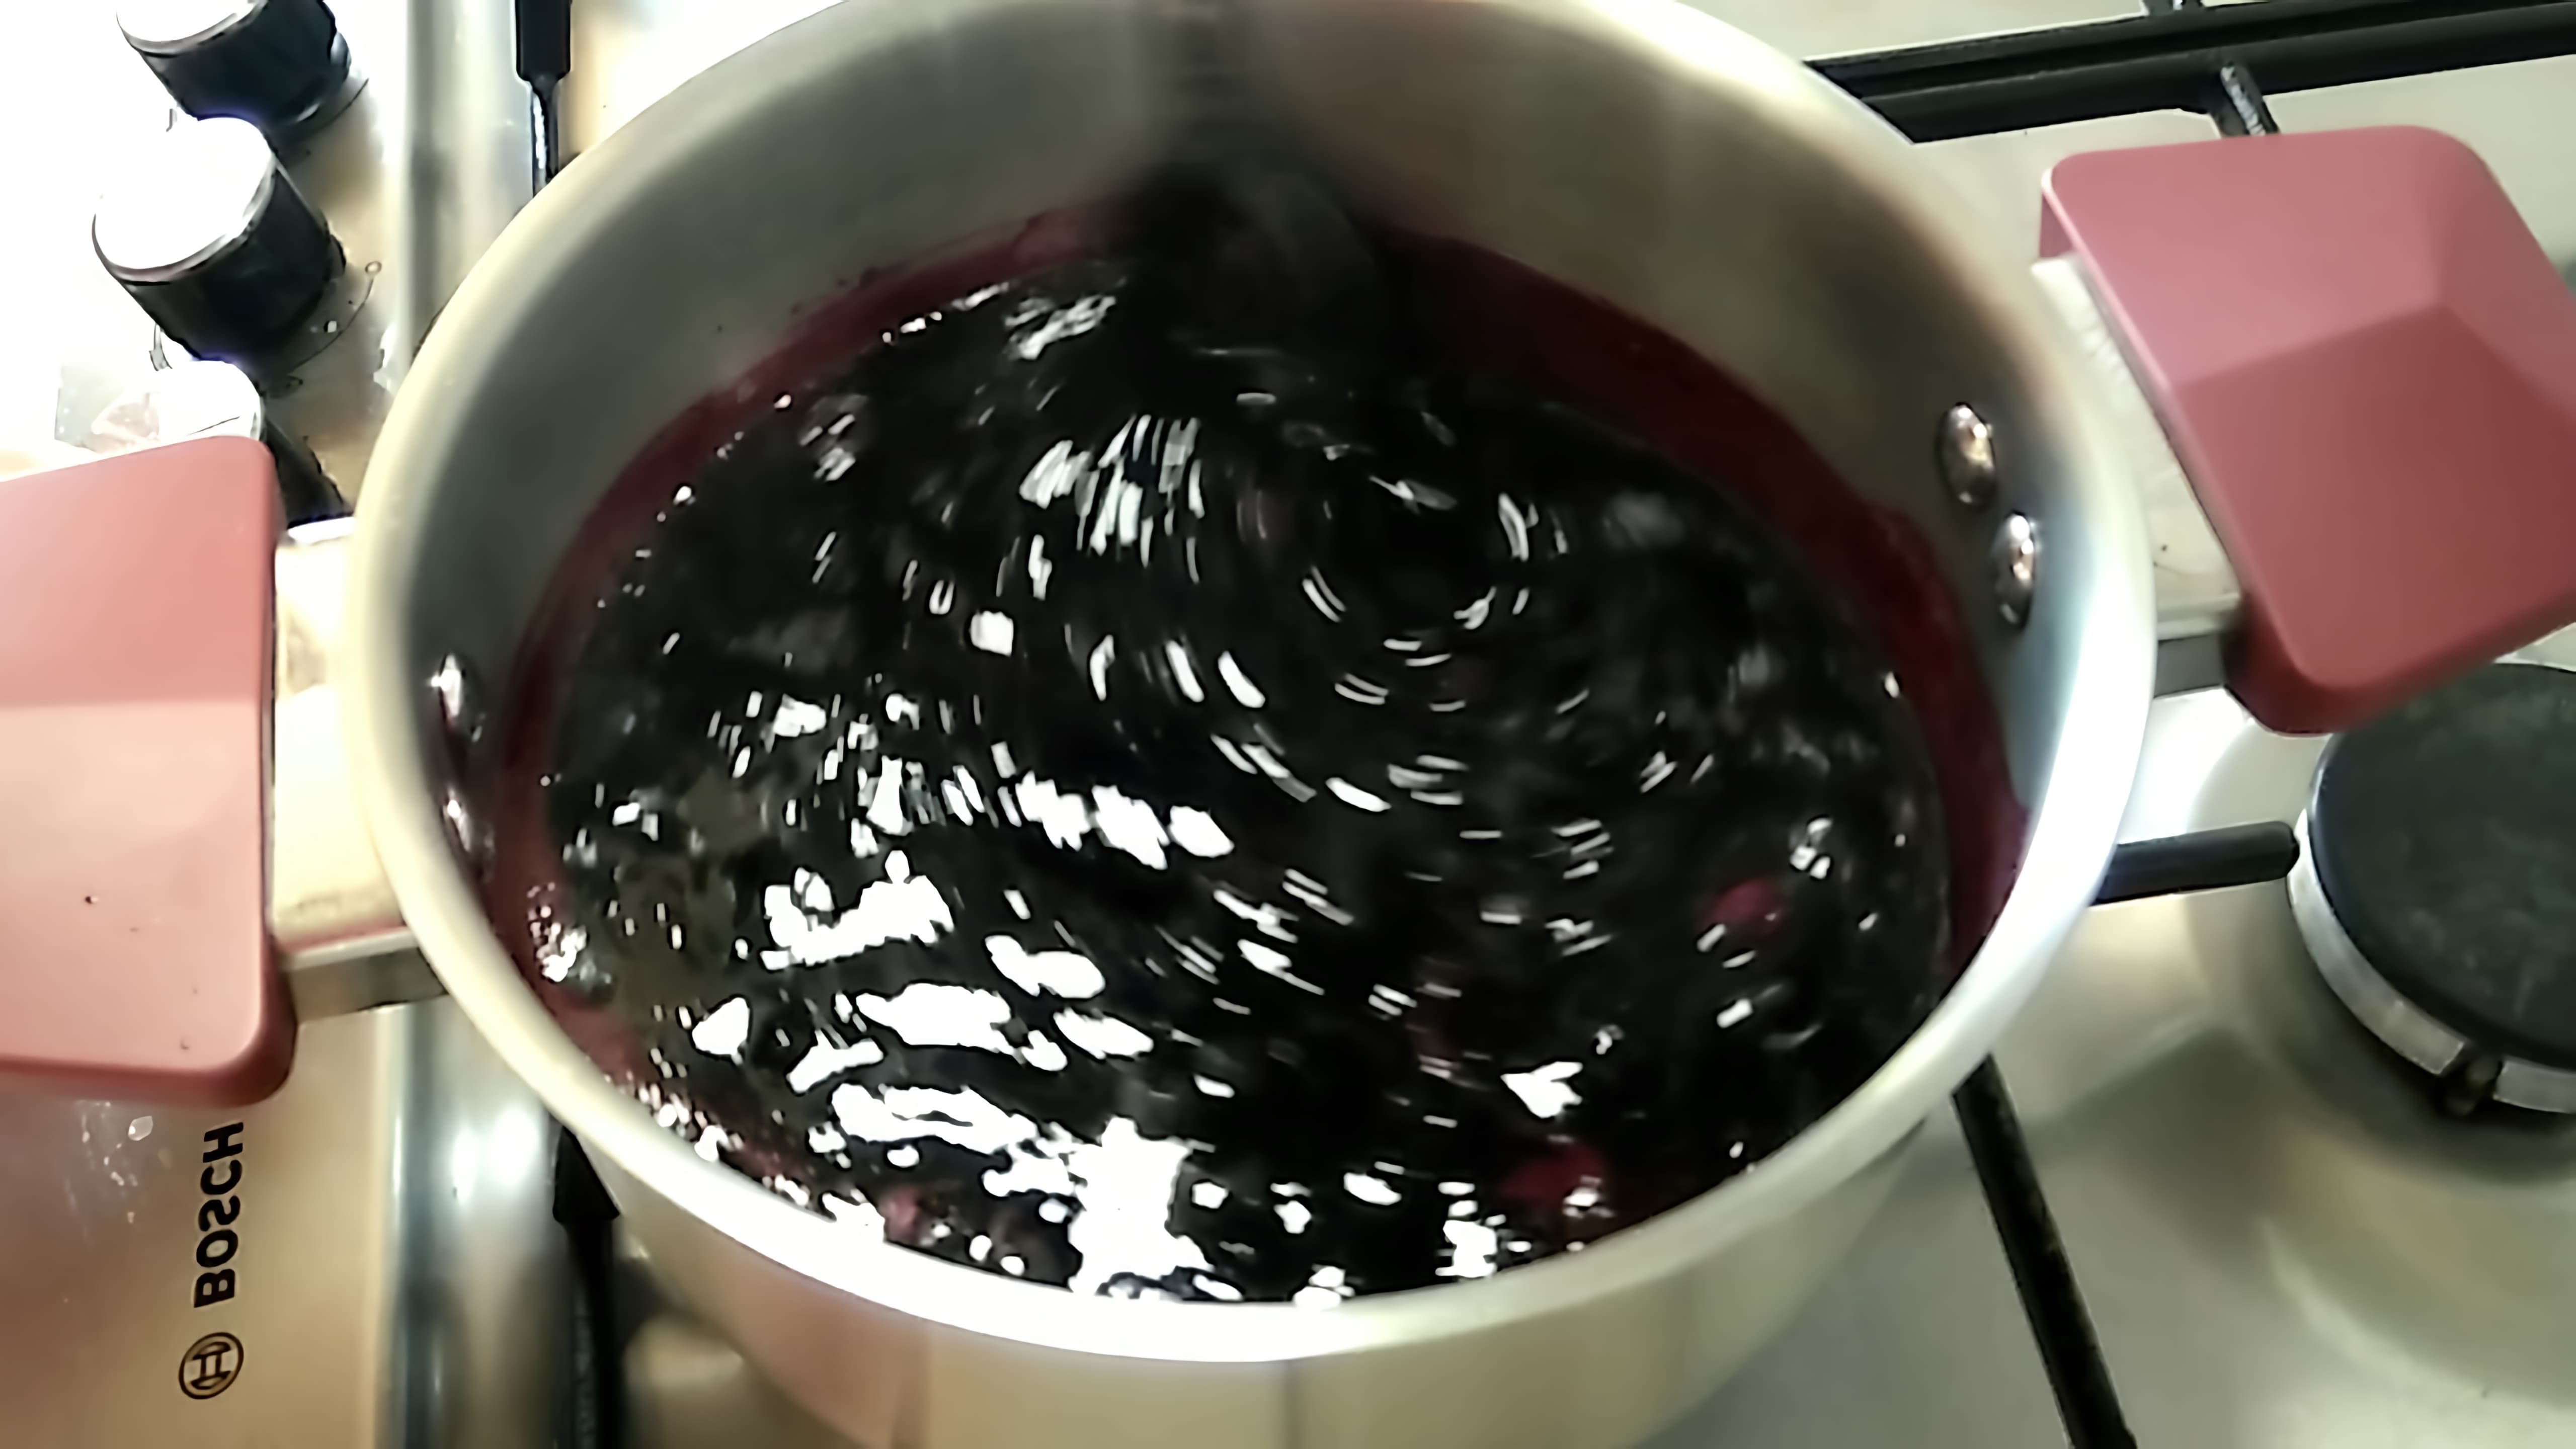 В этом видео Людмила показывает, как приготовить вкусный и полезный конфитюр из черной смородины всего за 10 минут